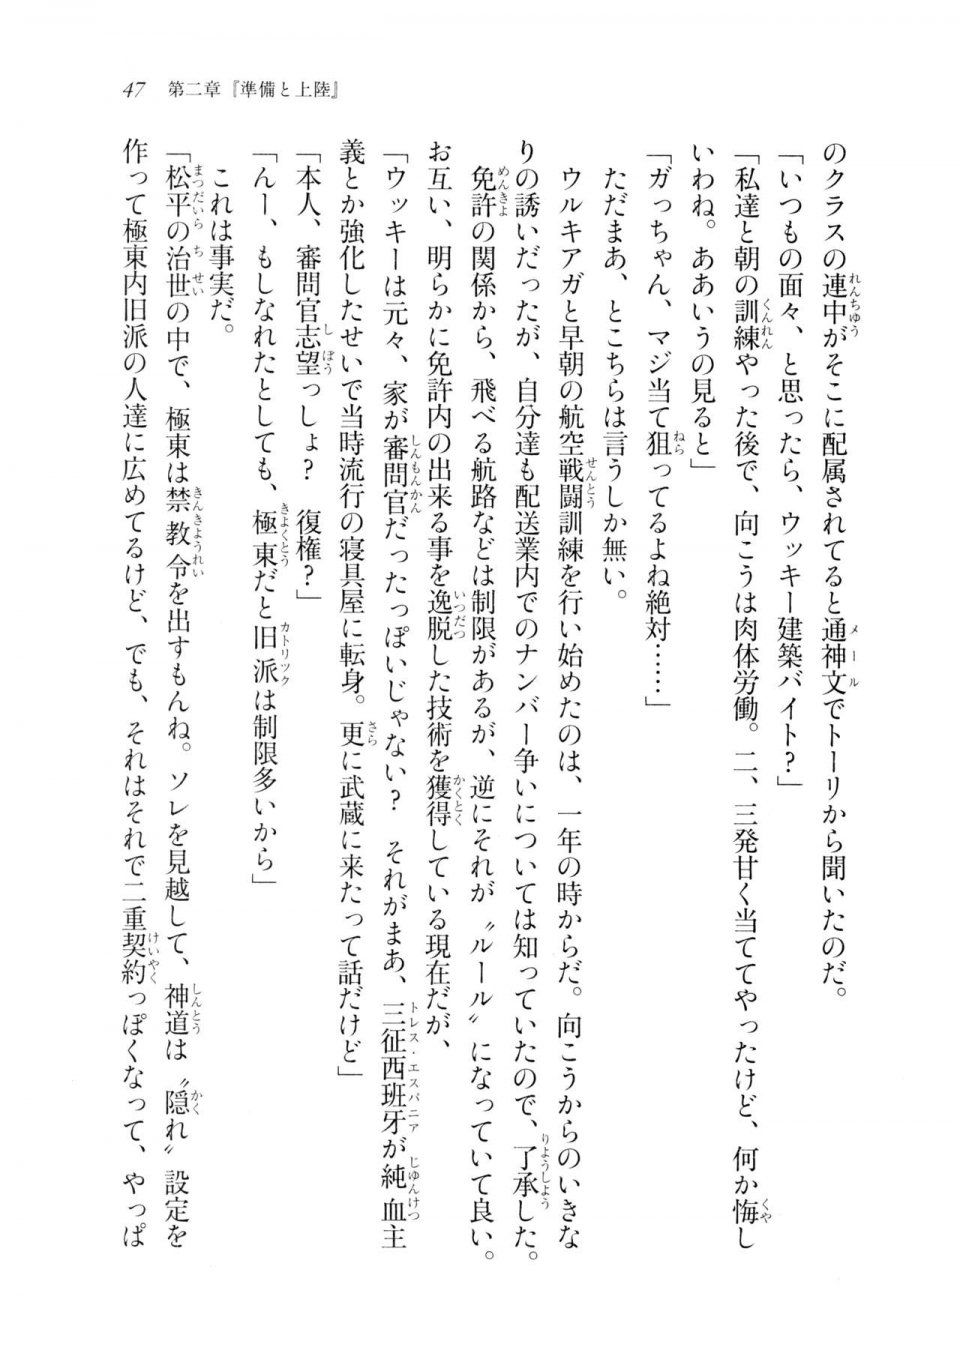 Kyoukai Senjou no Horizon LN Sidestory Vol 2 - Photo #45